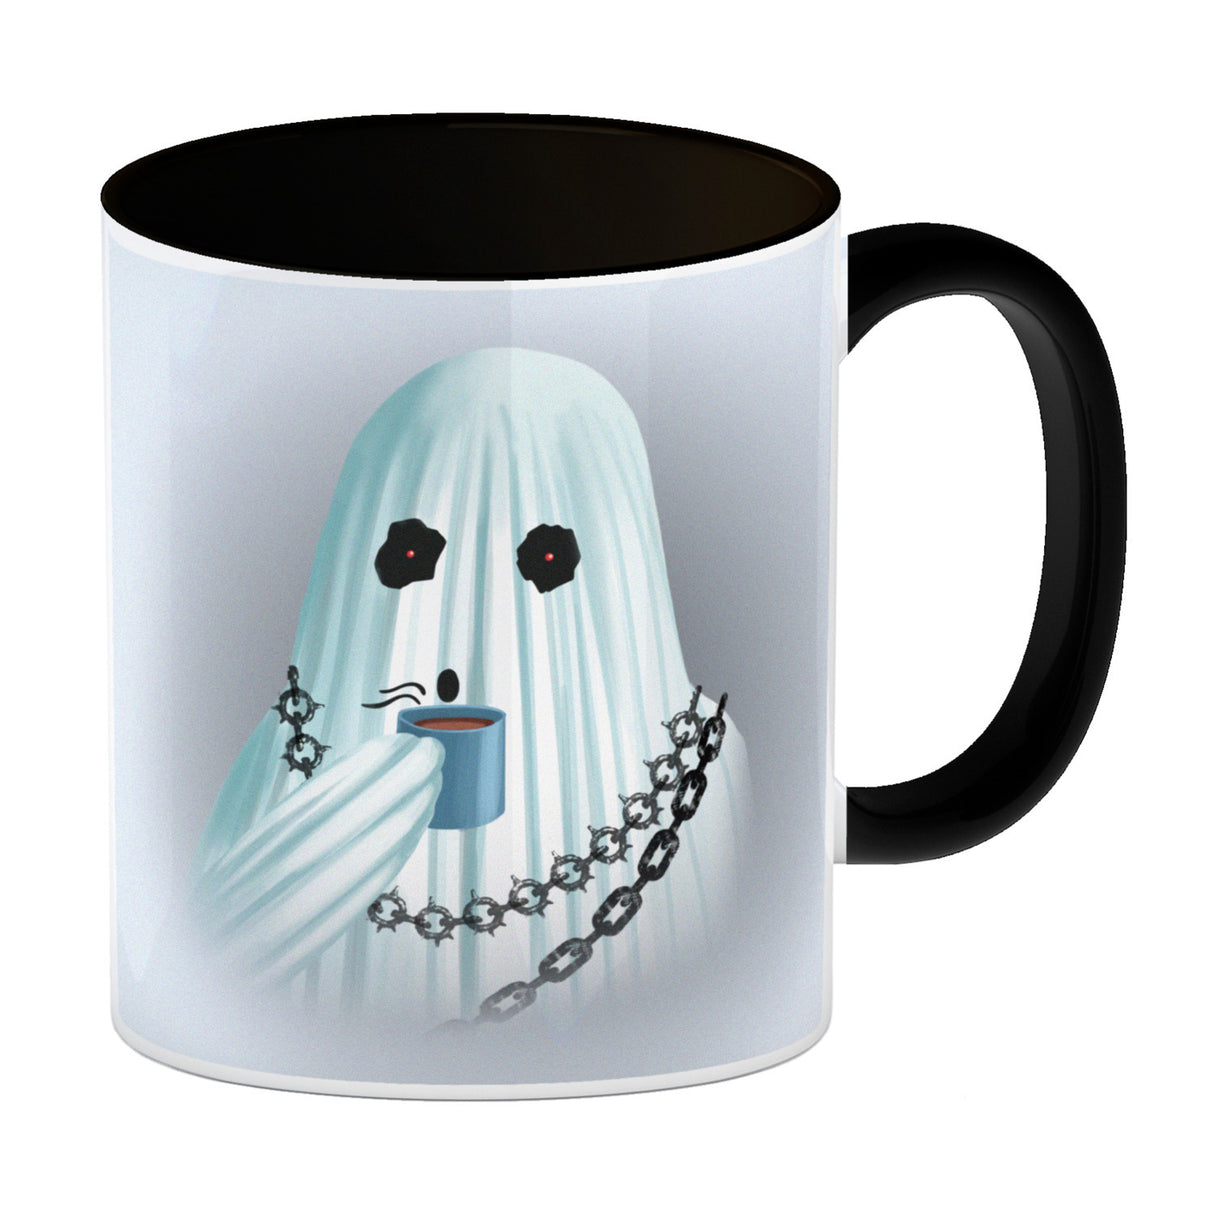 Kaffeebecher mit lustigem Motiv und Spruch - Auch Geister brauchen Kaffee -